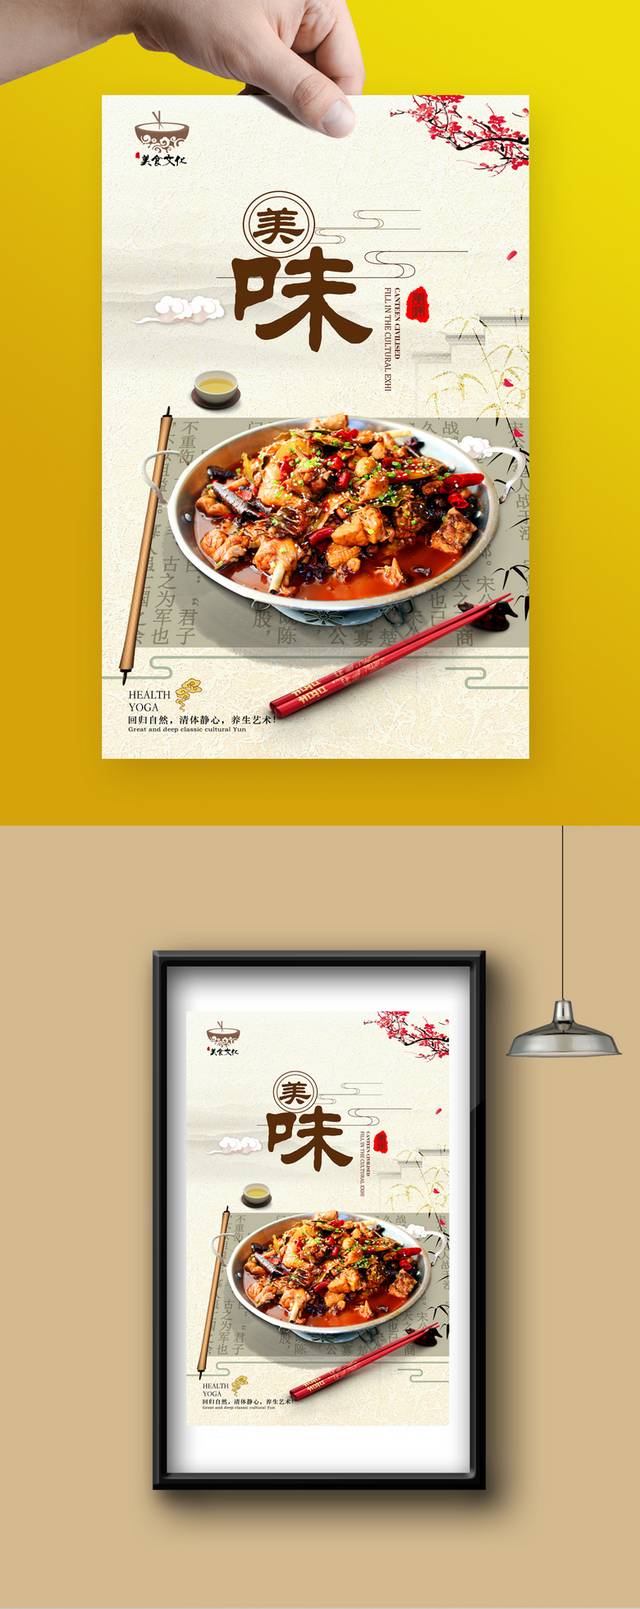 古典中国风郴州烧鸡公宣传海报设计